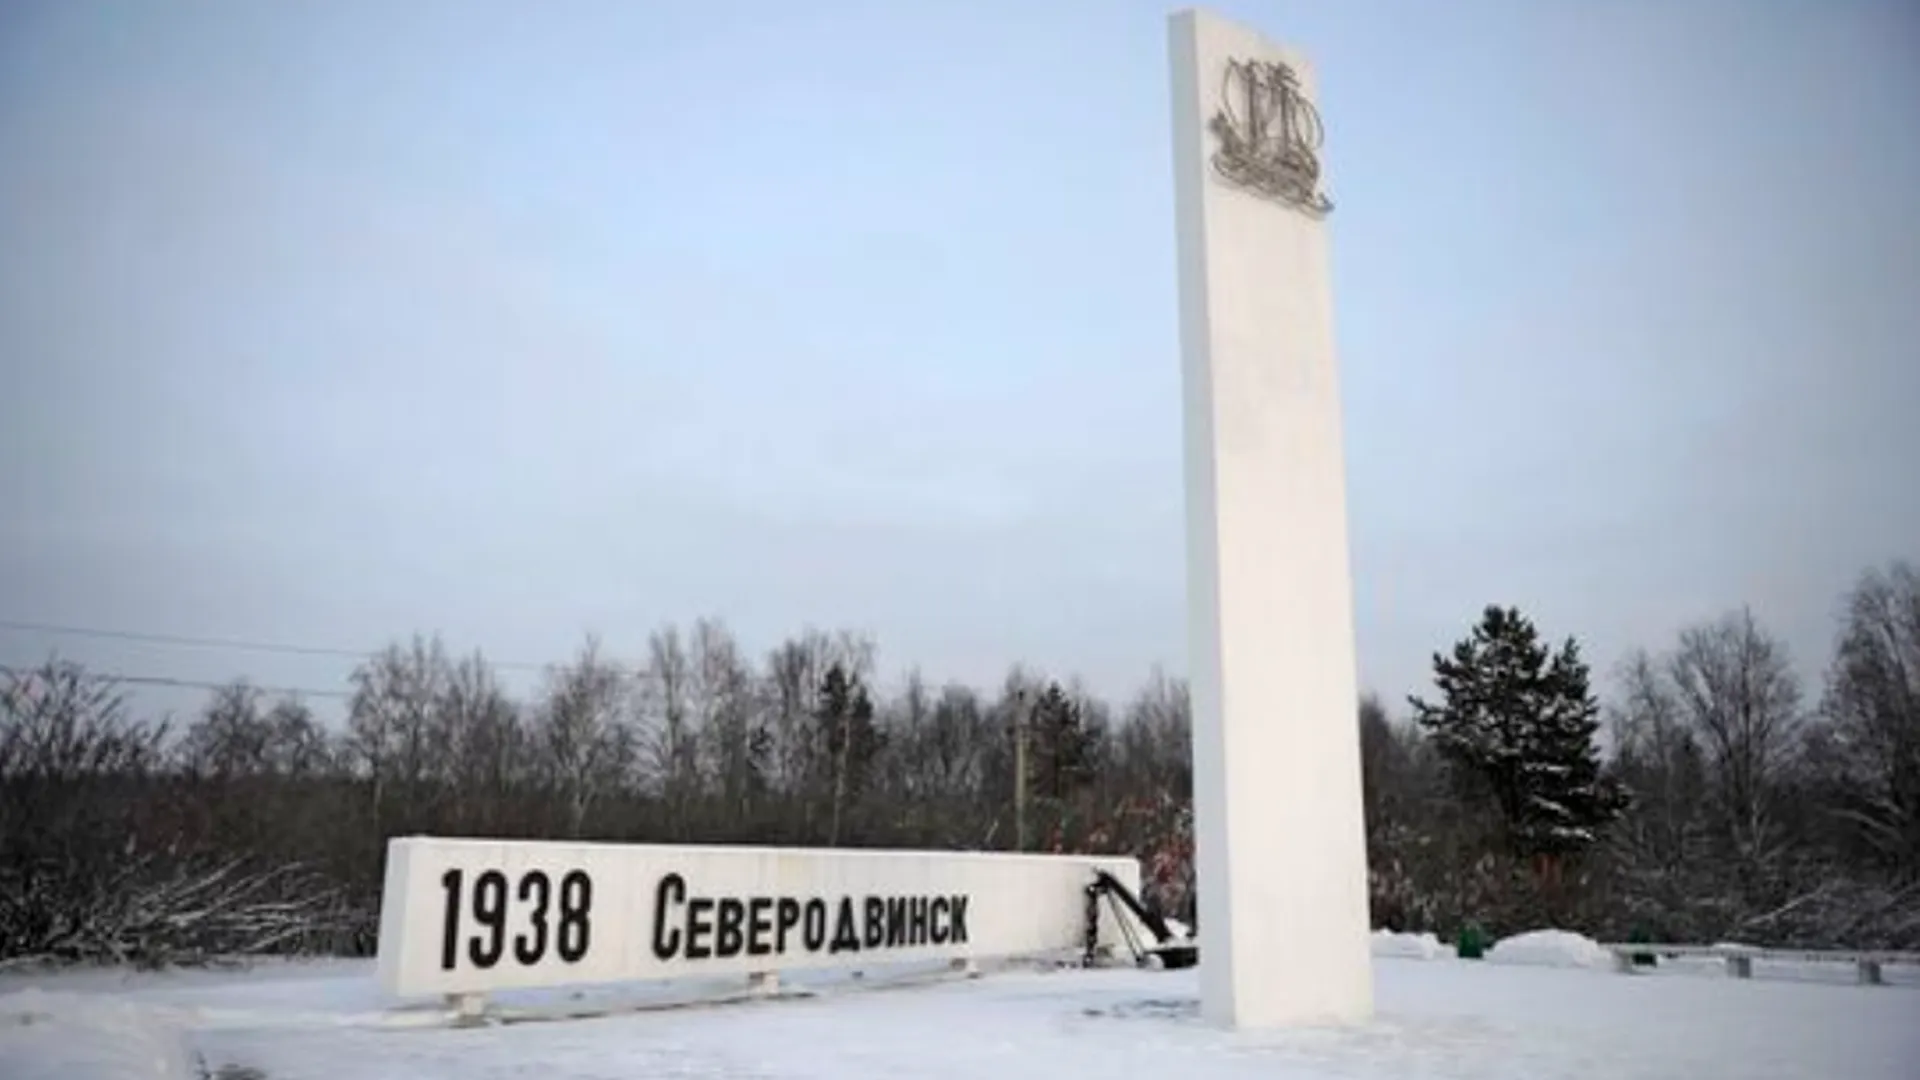 Двух дипломатов НАТО задержали при попытке въехать в Северодвинск